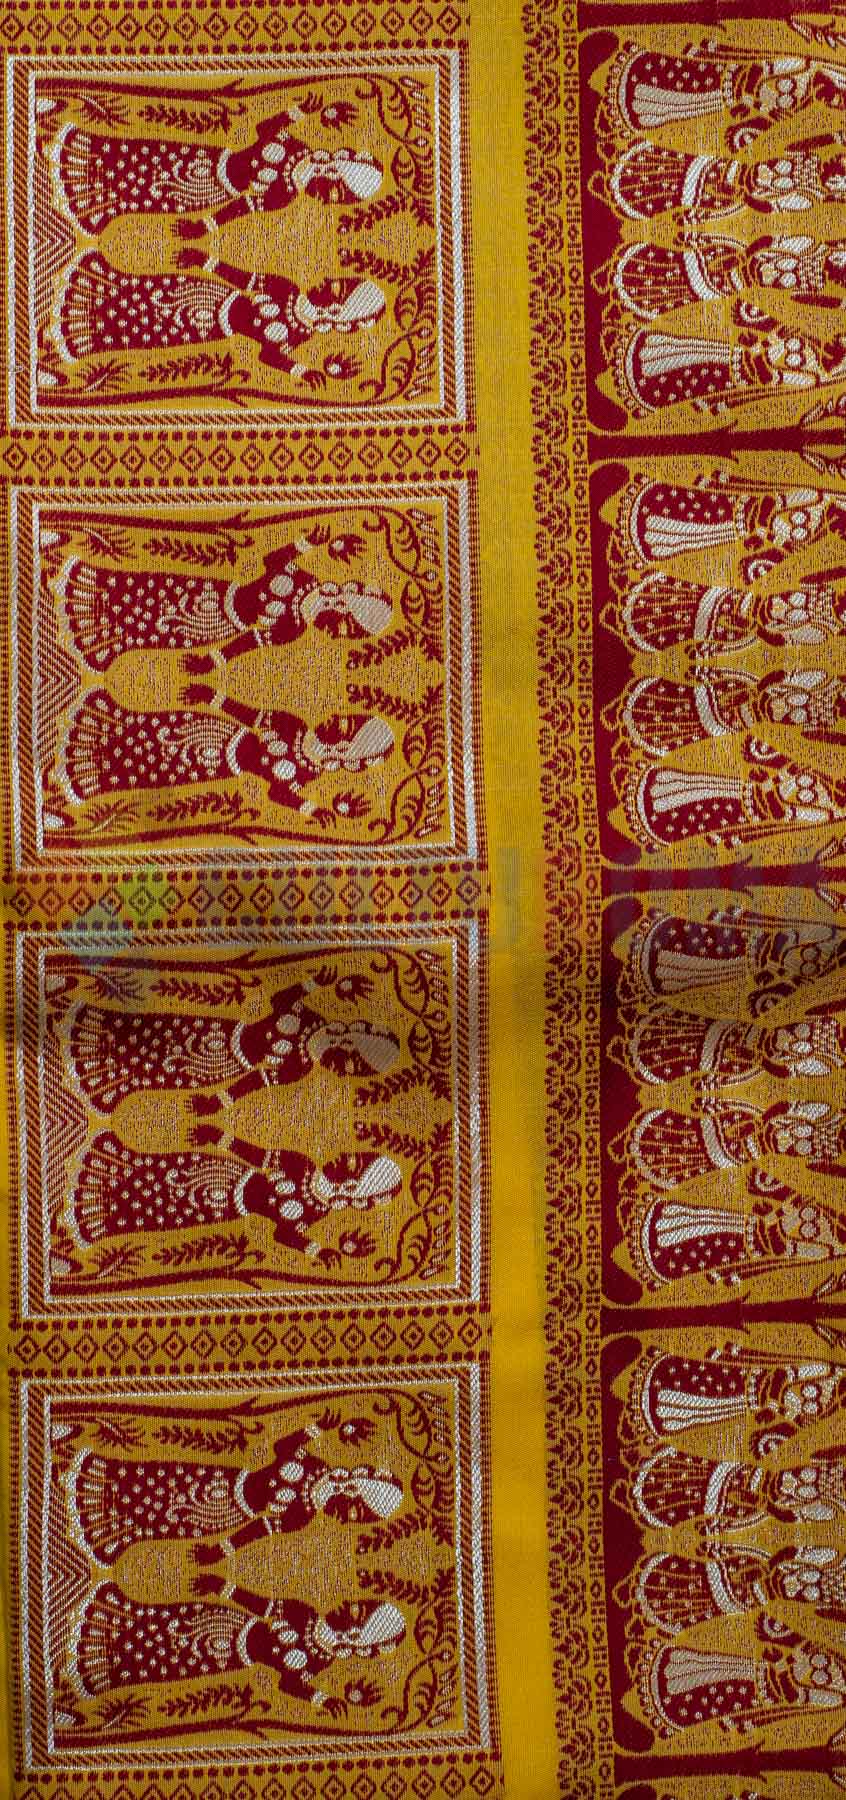 Baluchari Silk - Stunning deepblue with gold zari & meenakari work